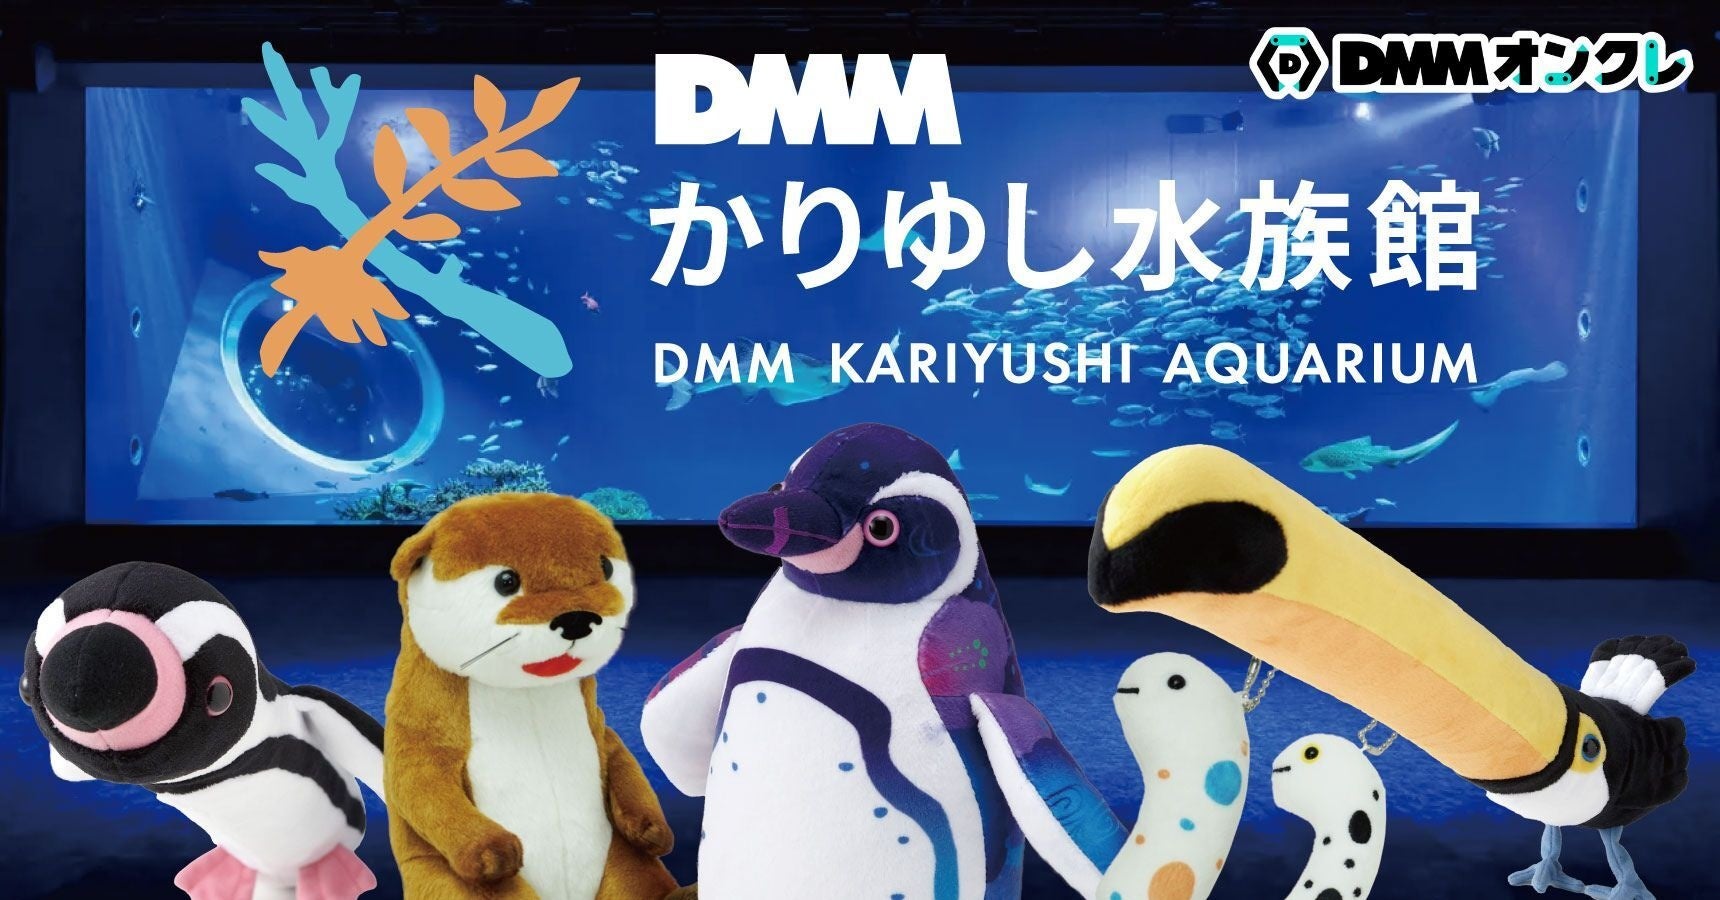 DMMオンクレに「DMMかりゆし水族館」のグッズが登場 フンボルトペンギンやチンアナゴのぬいぐるみなど